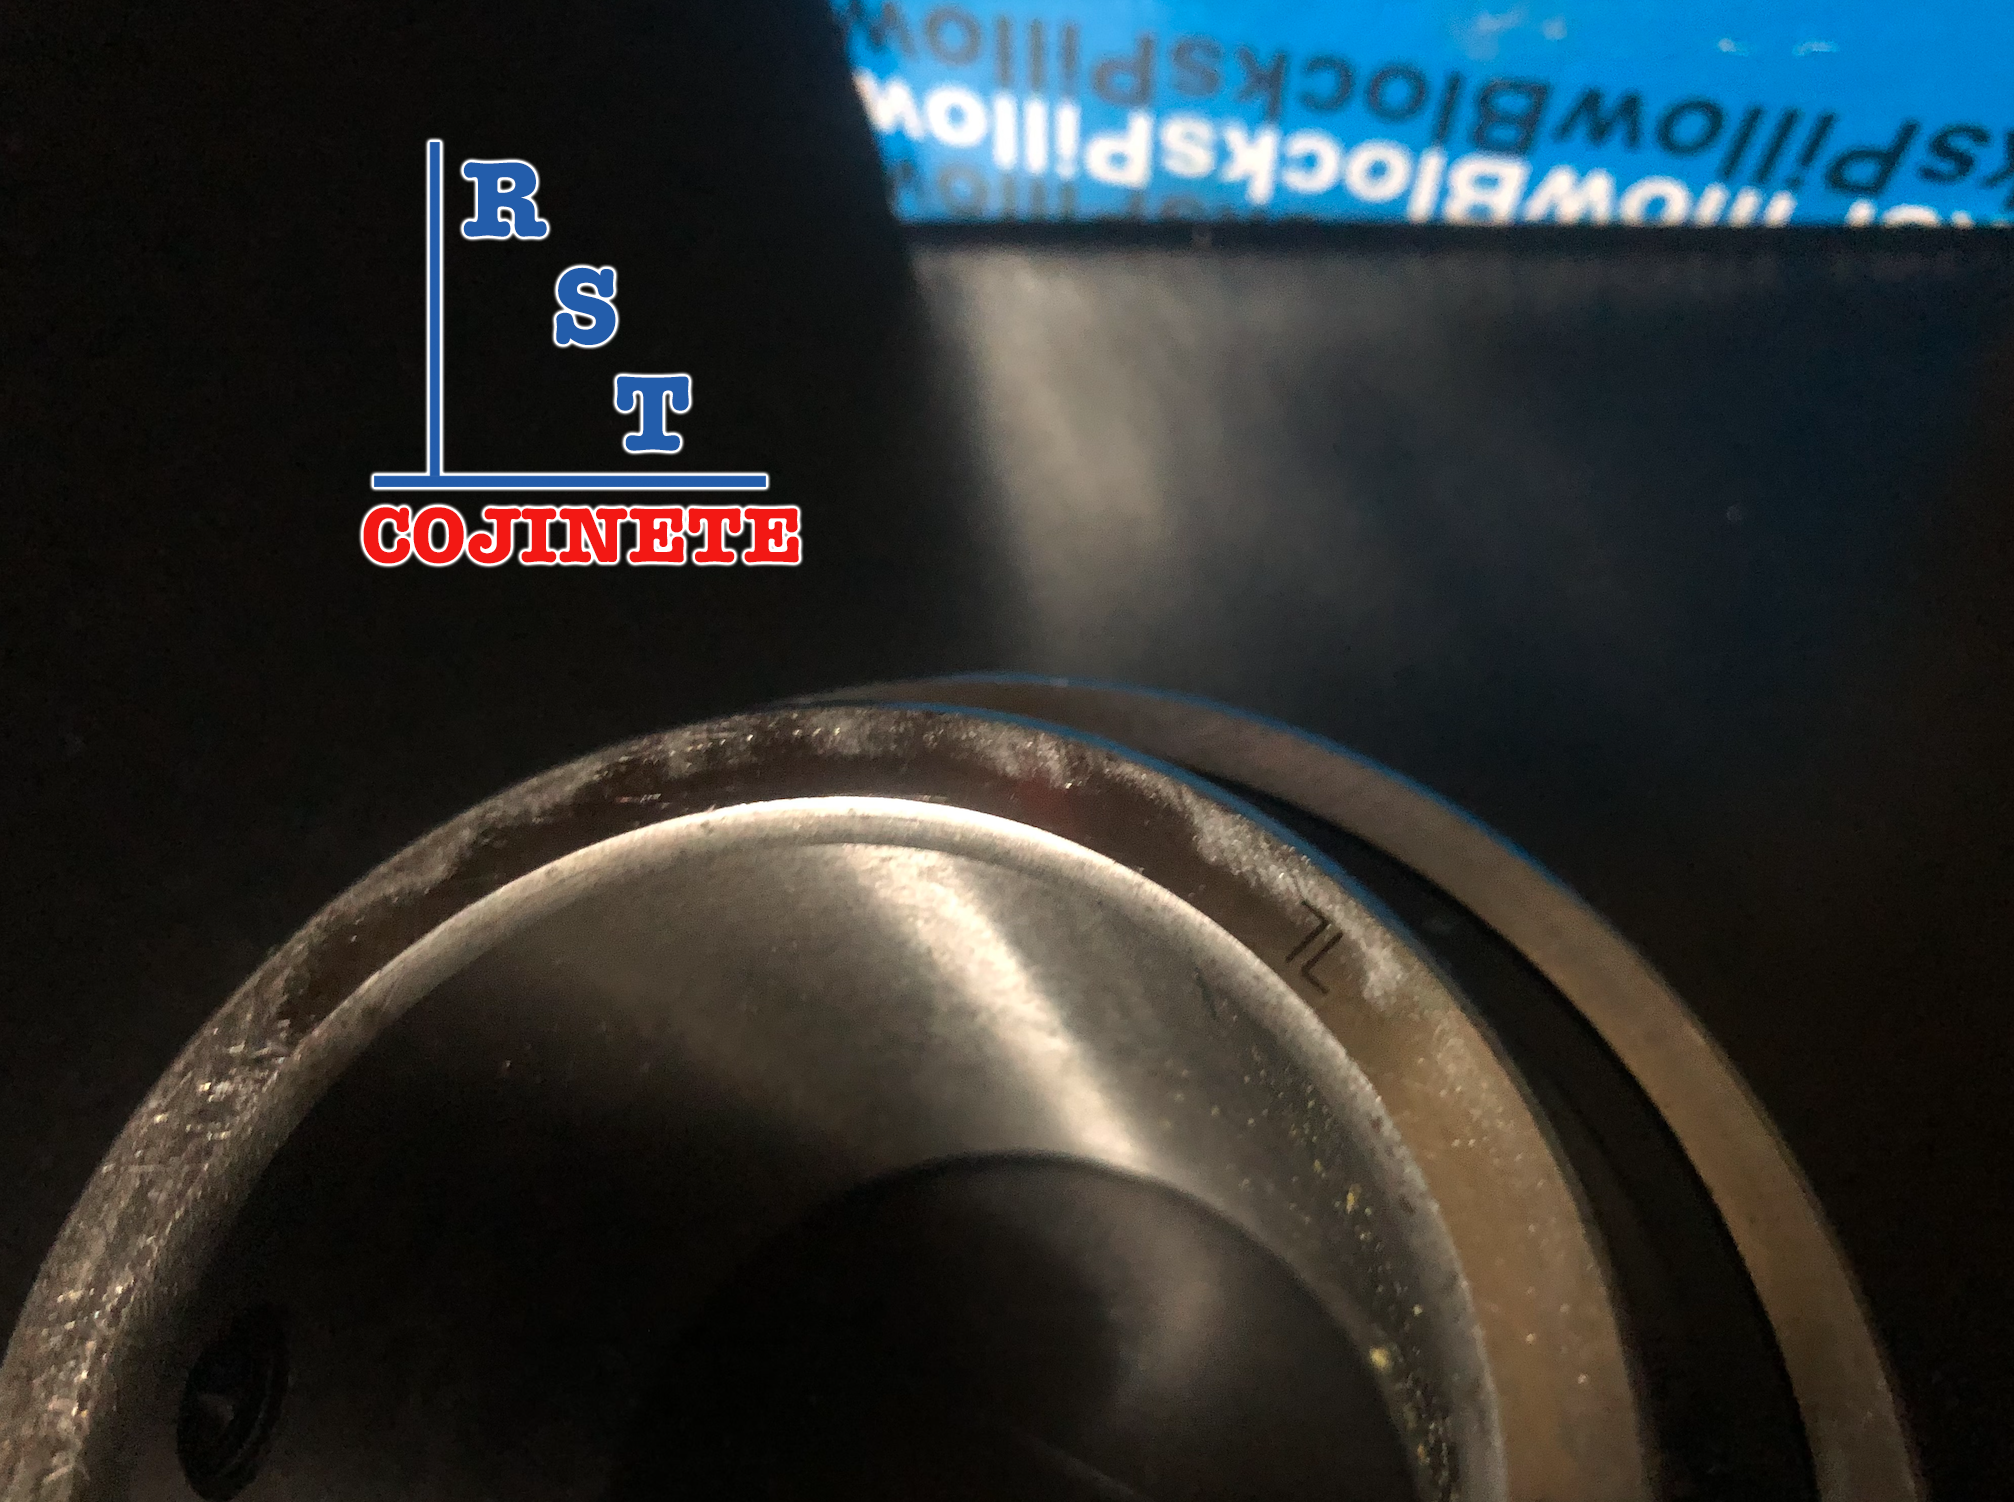 Cojinete insertable UC209-28 | Rodamiento para eje de 1-¾" rígido de bolas con sello de hule para chumacera